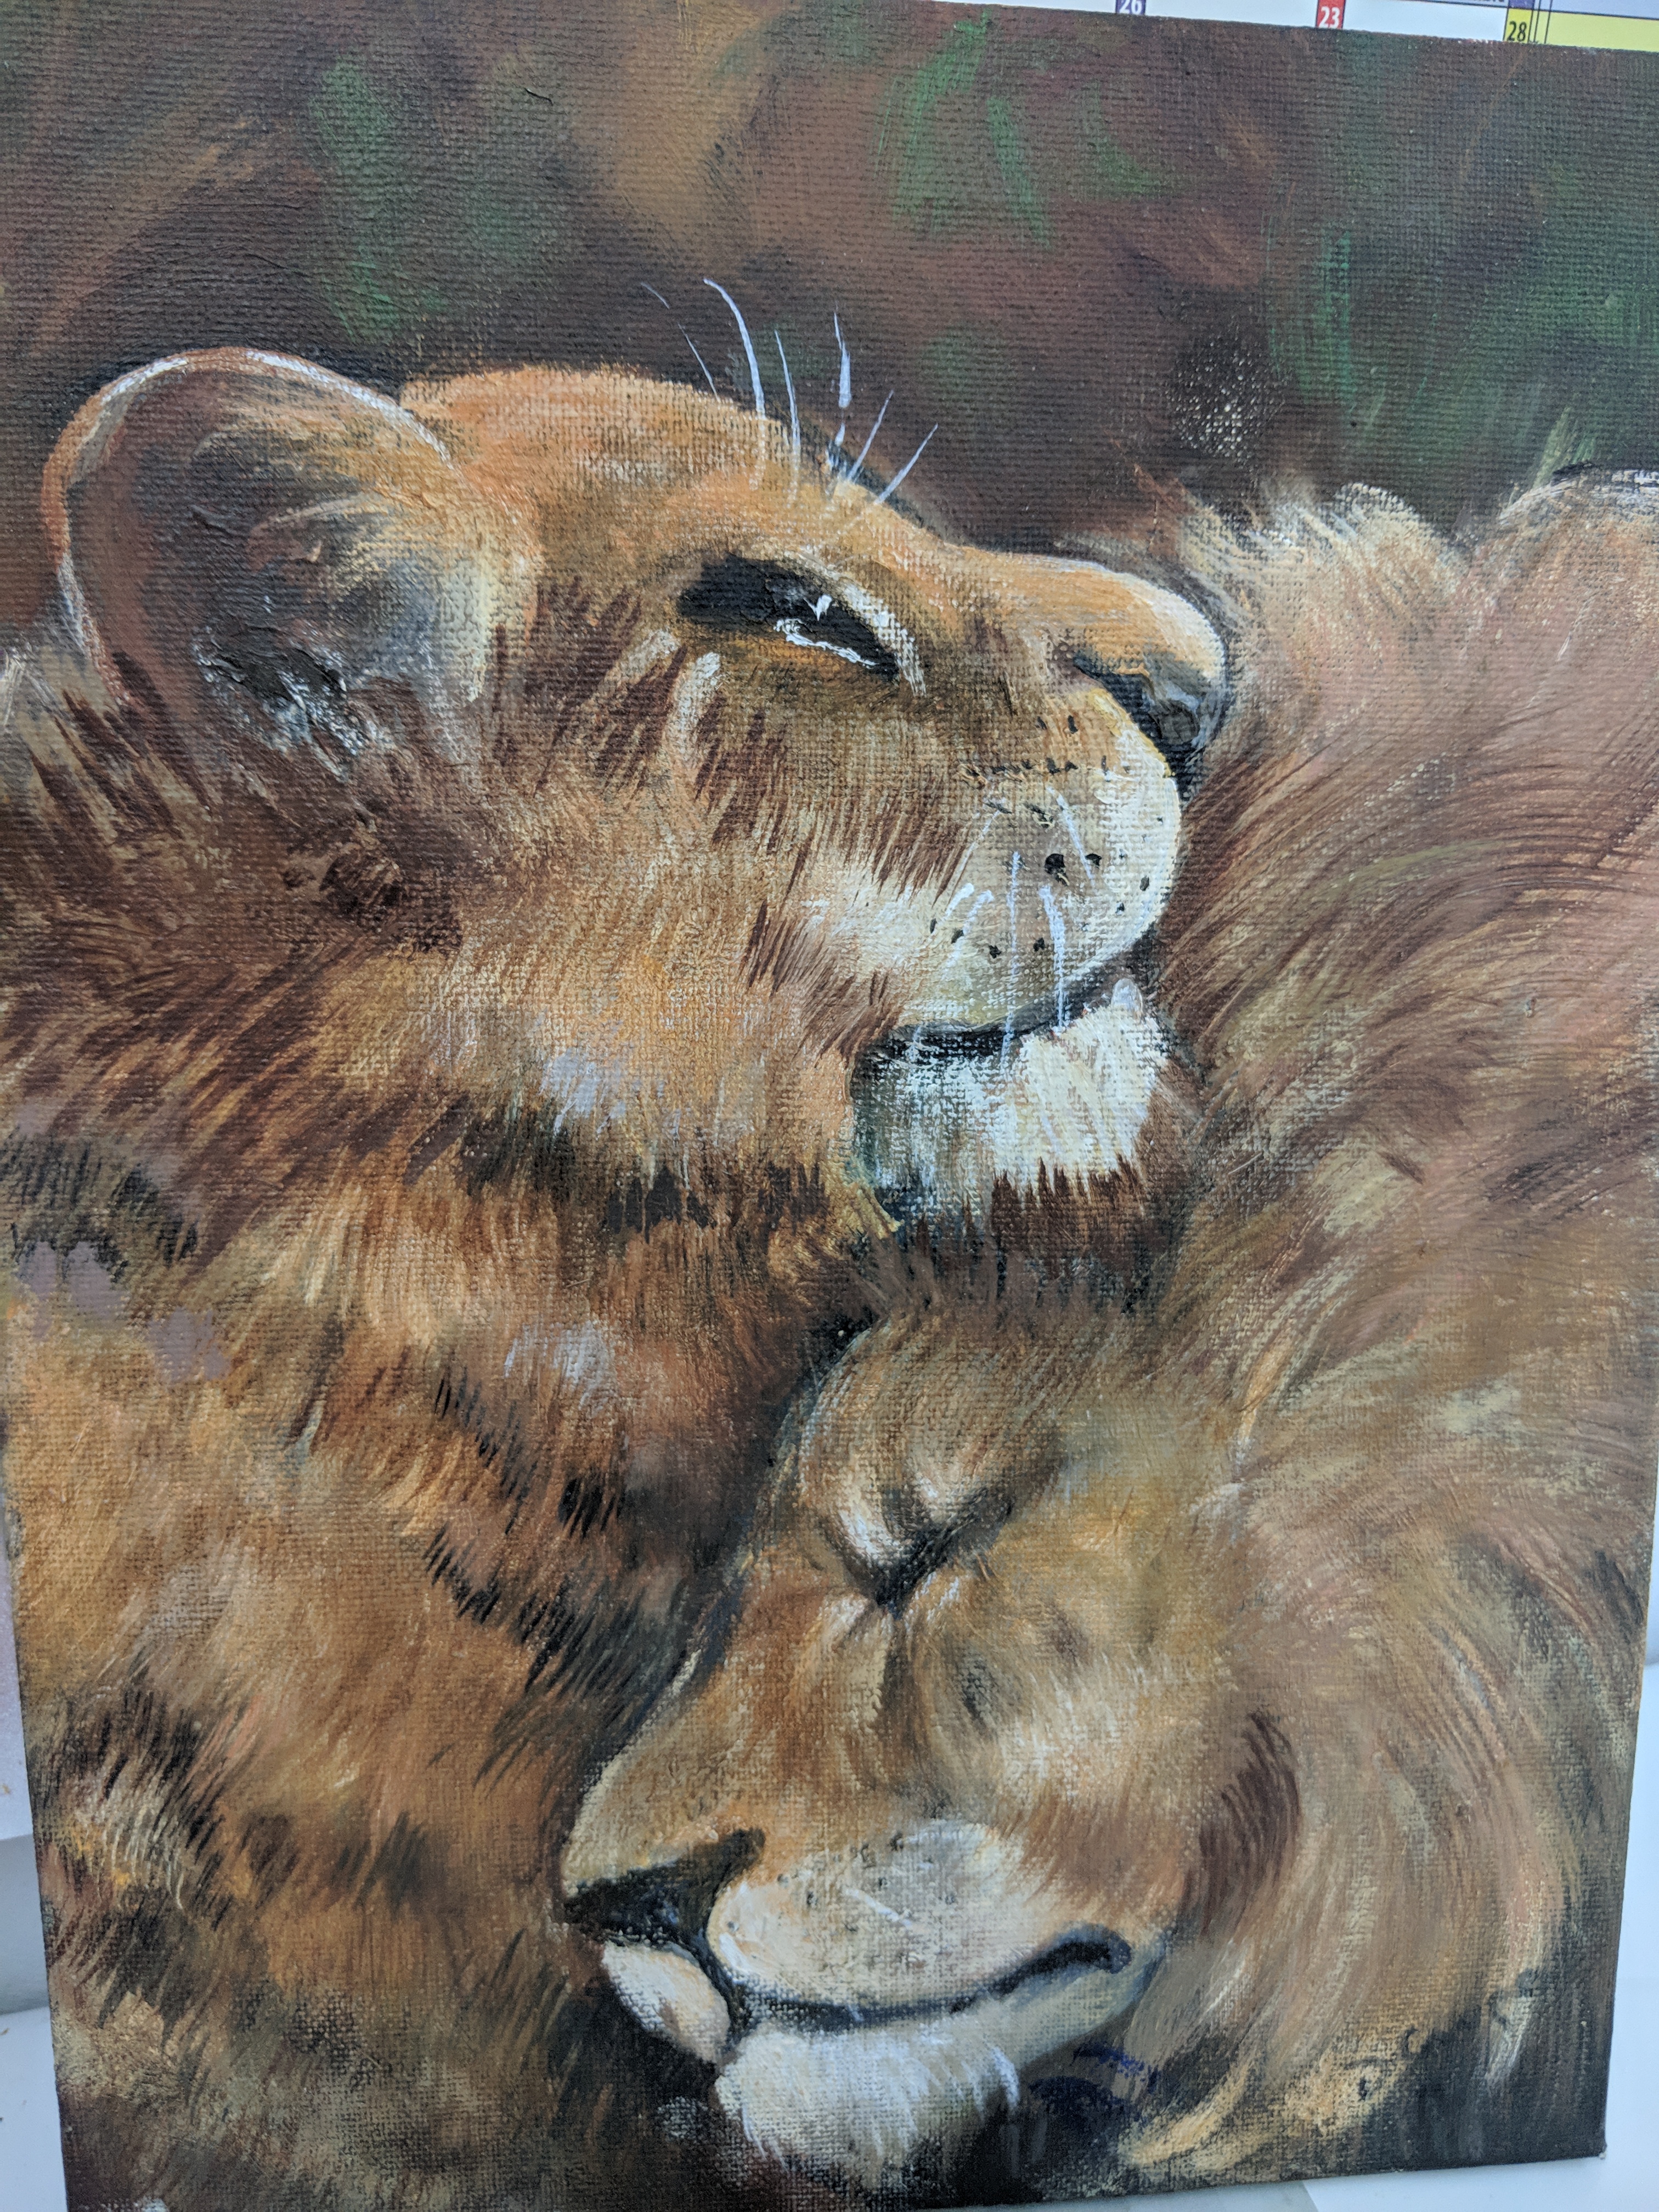 lion pair